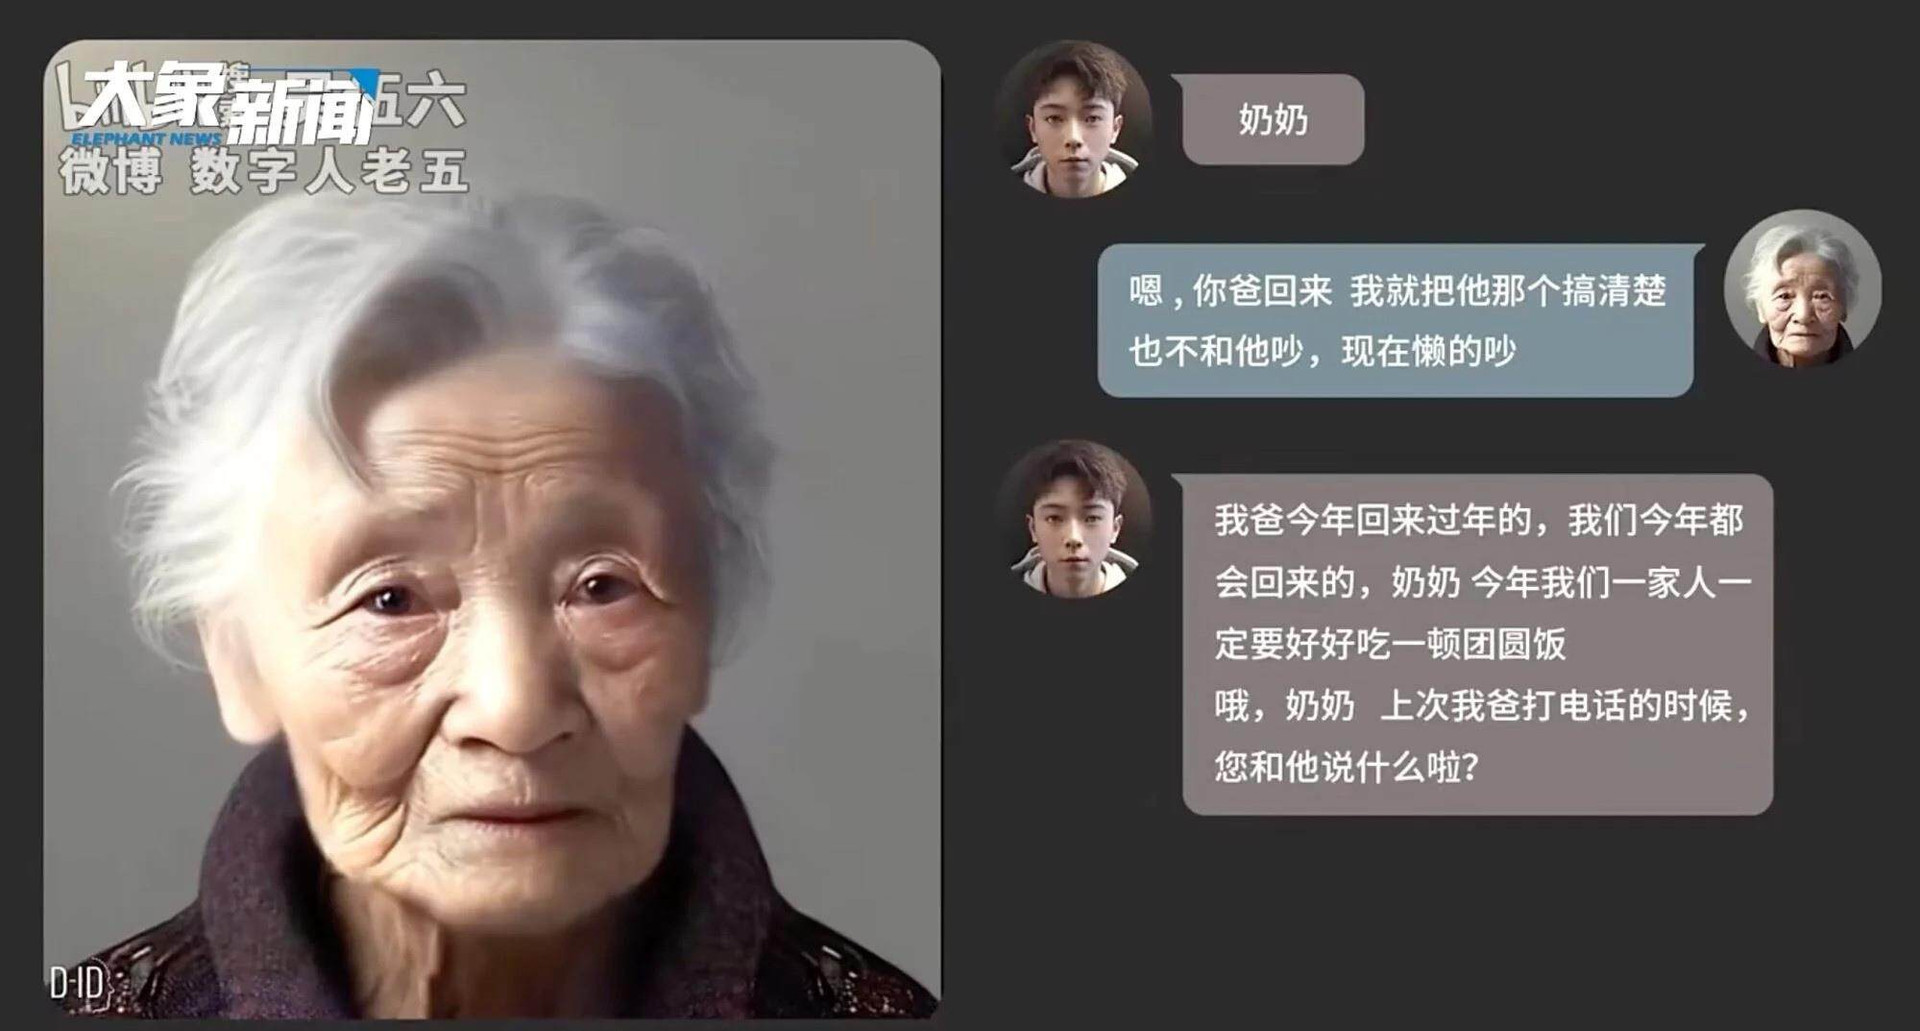 Cháu 'hồi sinh' bà đã mất nhờ AI gây bão mạng ở Trung Quốc - 1